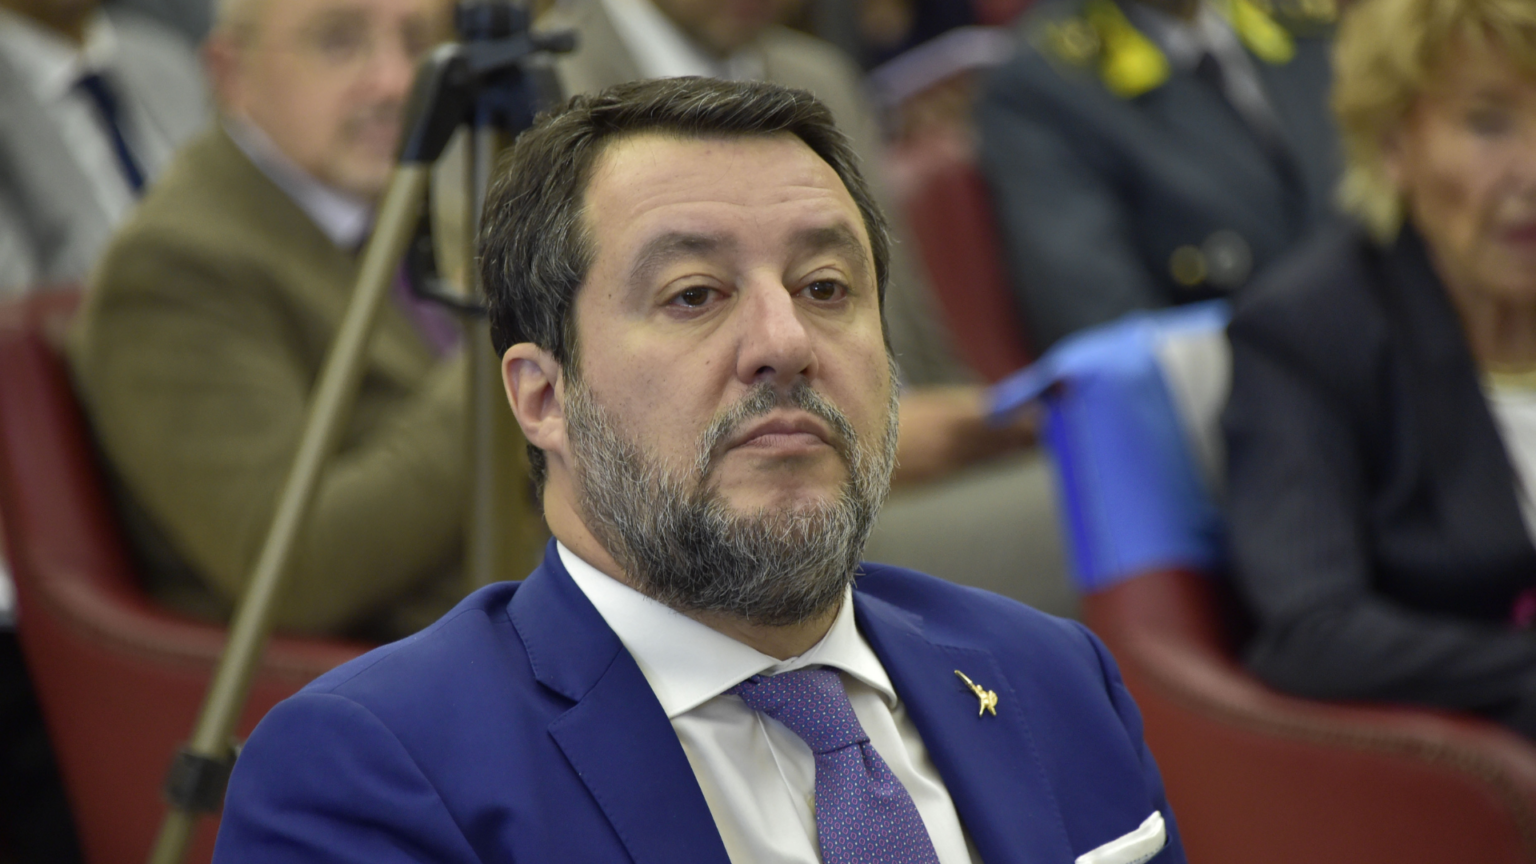 Europee, Matteo Salvini non si candiderà